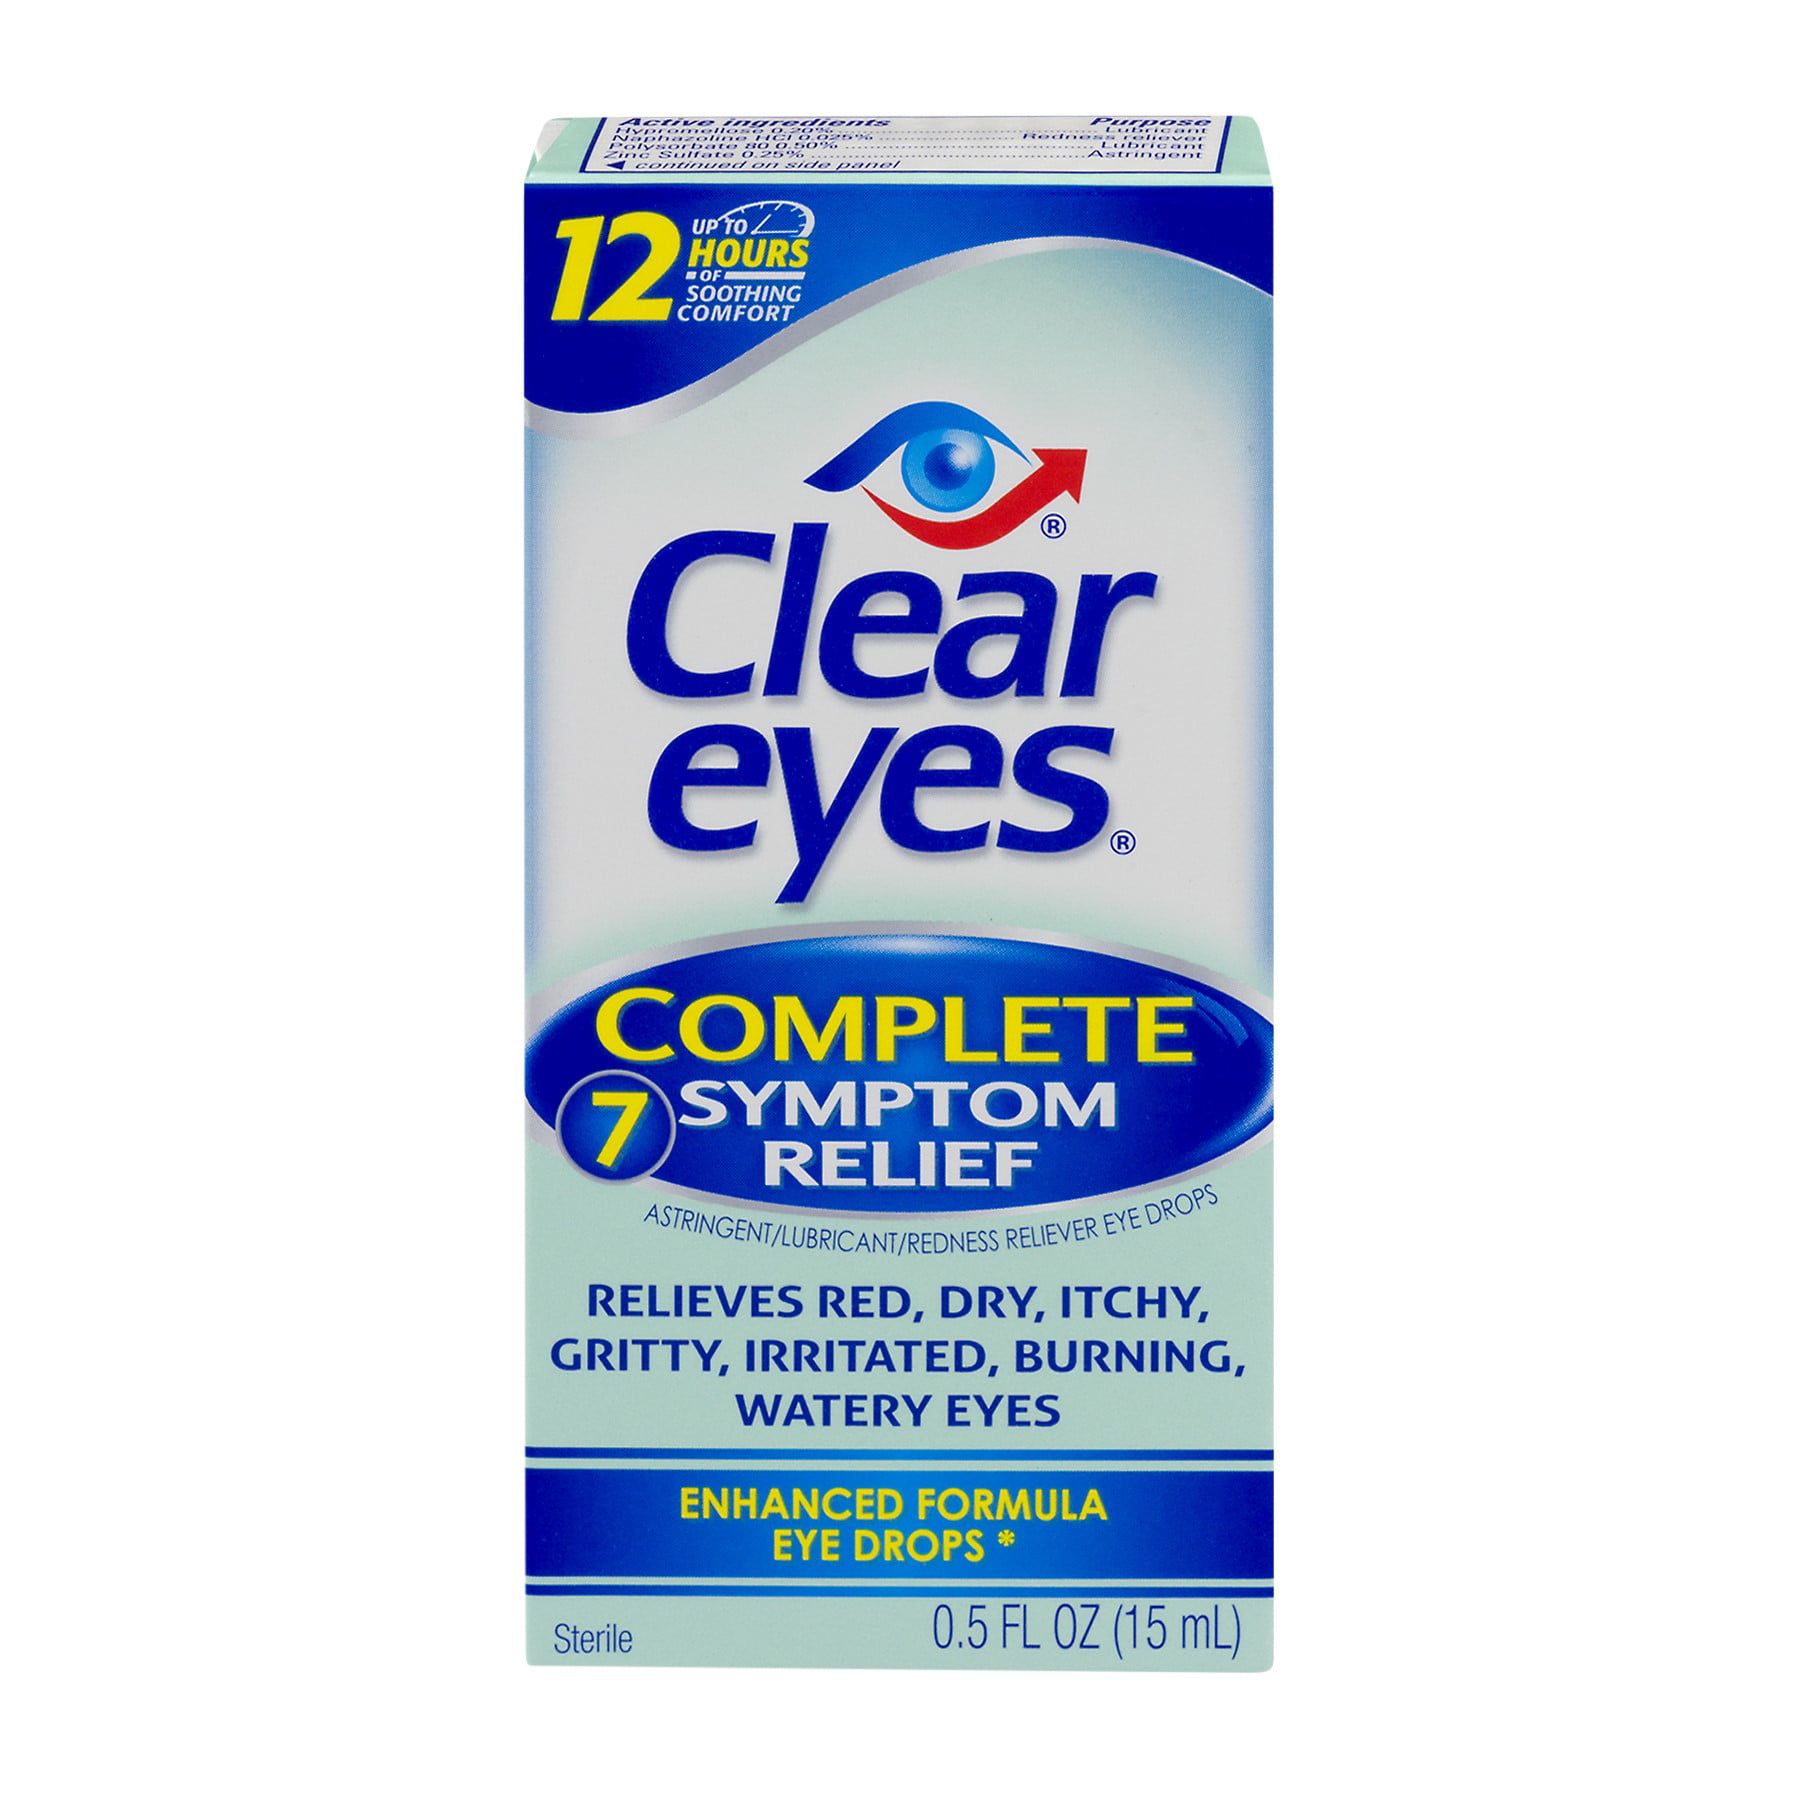 Clear eyes текст. Clear Eyes. Компьютер Clear Eye. Clear для глаз логотип. Clear Eyes 7 Symptoms.